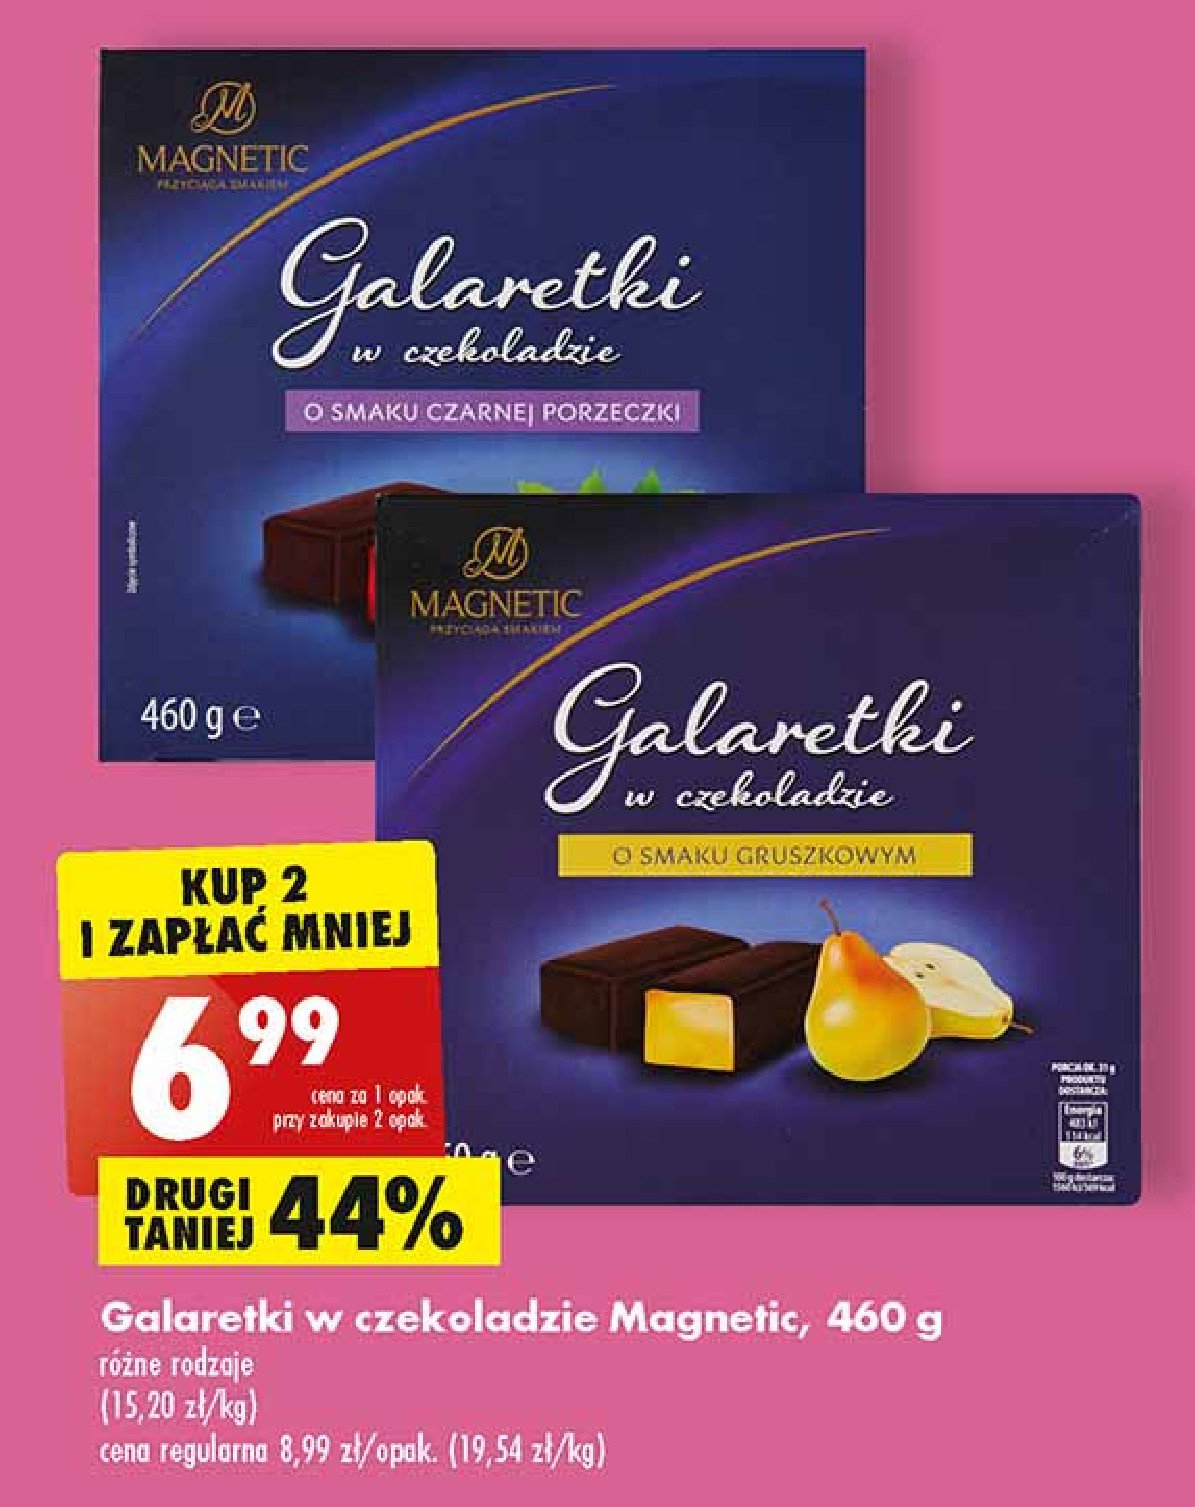 Galaretki o smaku gruszki w czekoladzie Magnetic promocja